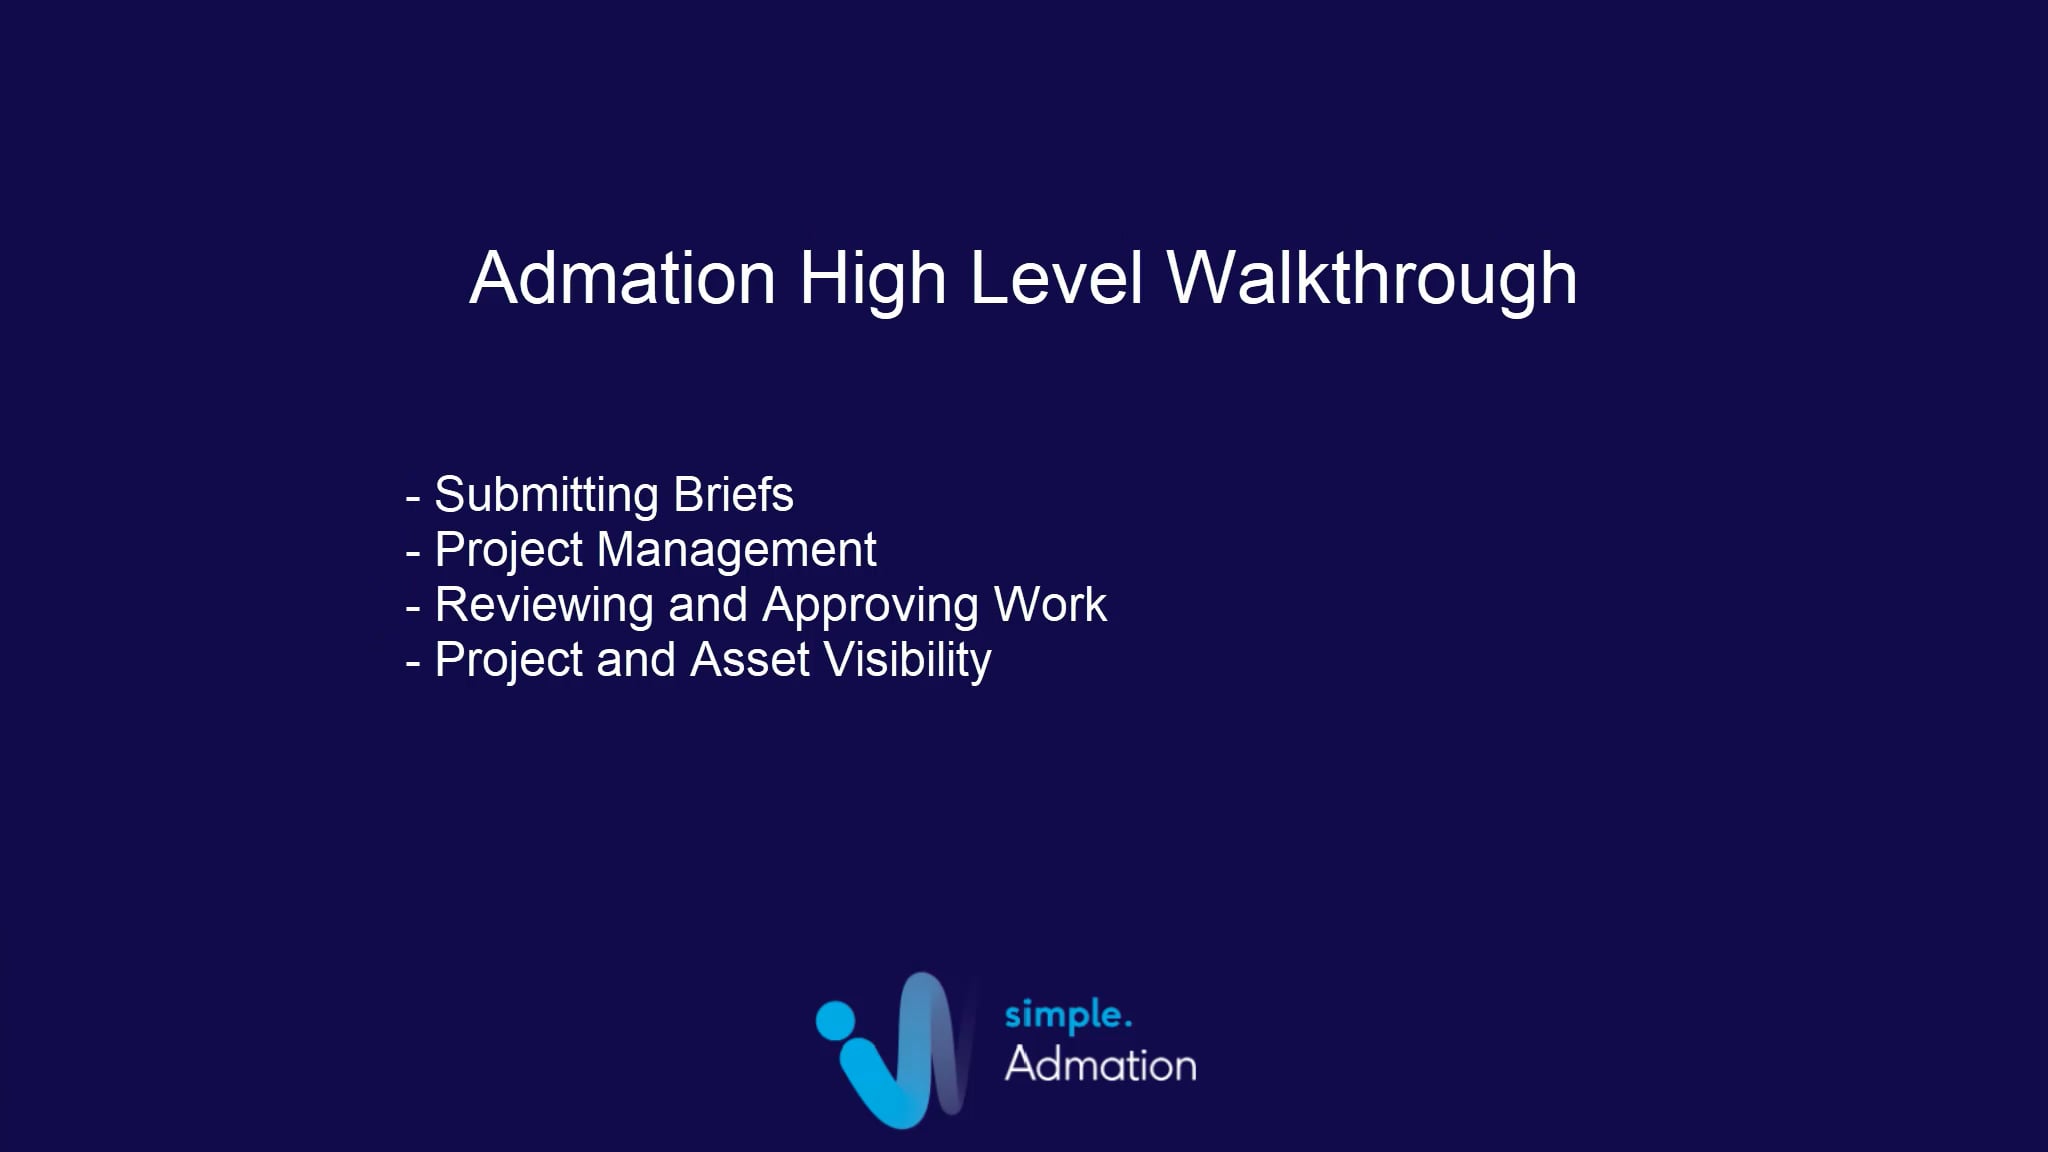 Admation high level walkthrough